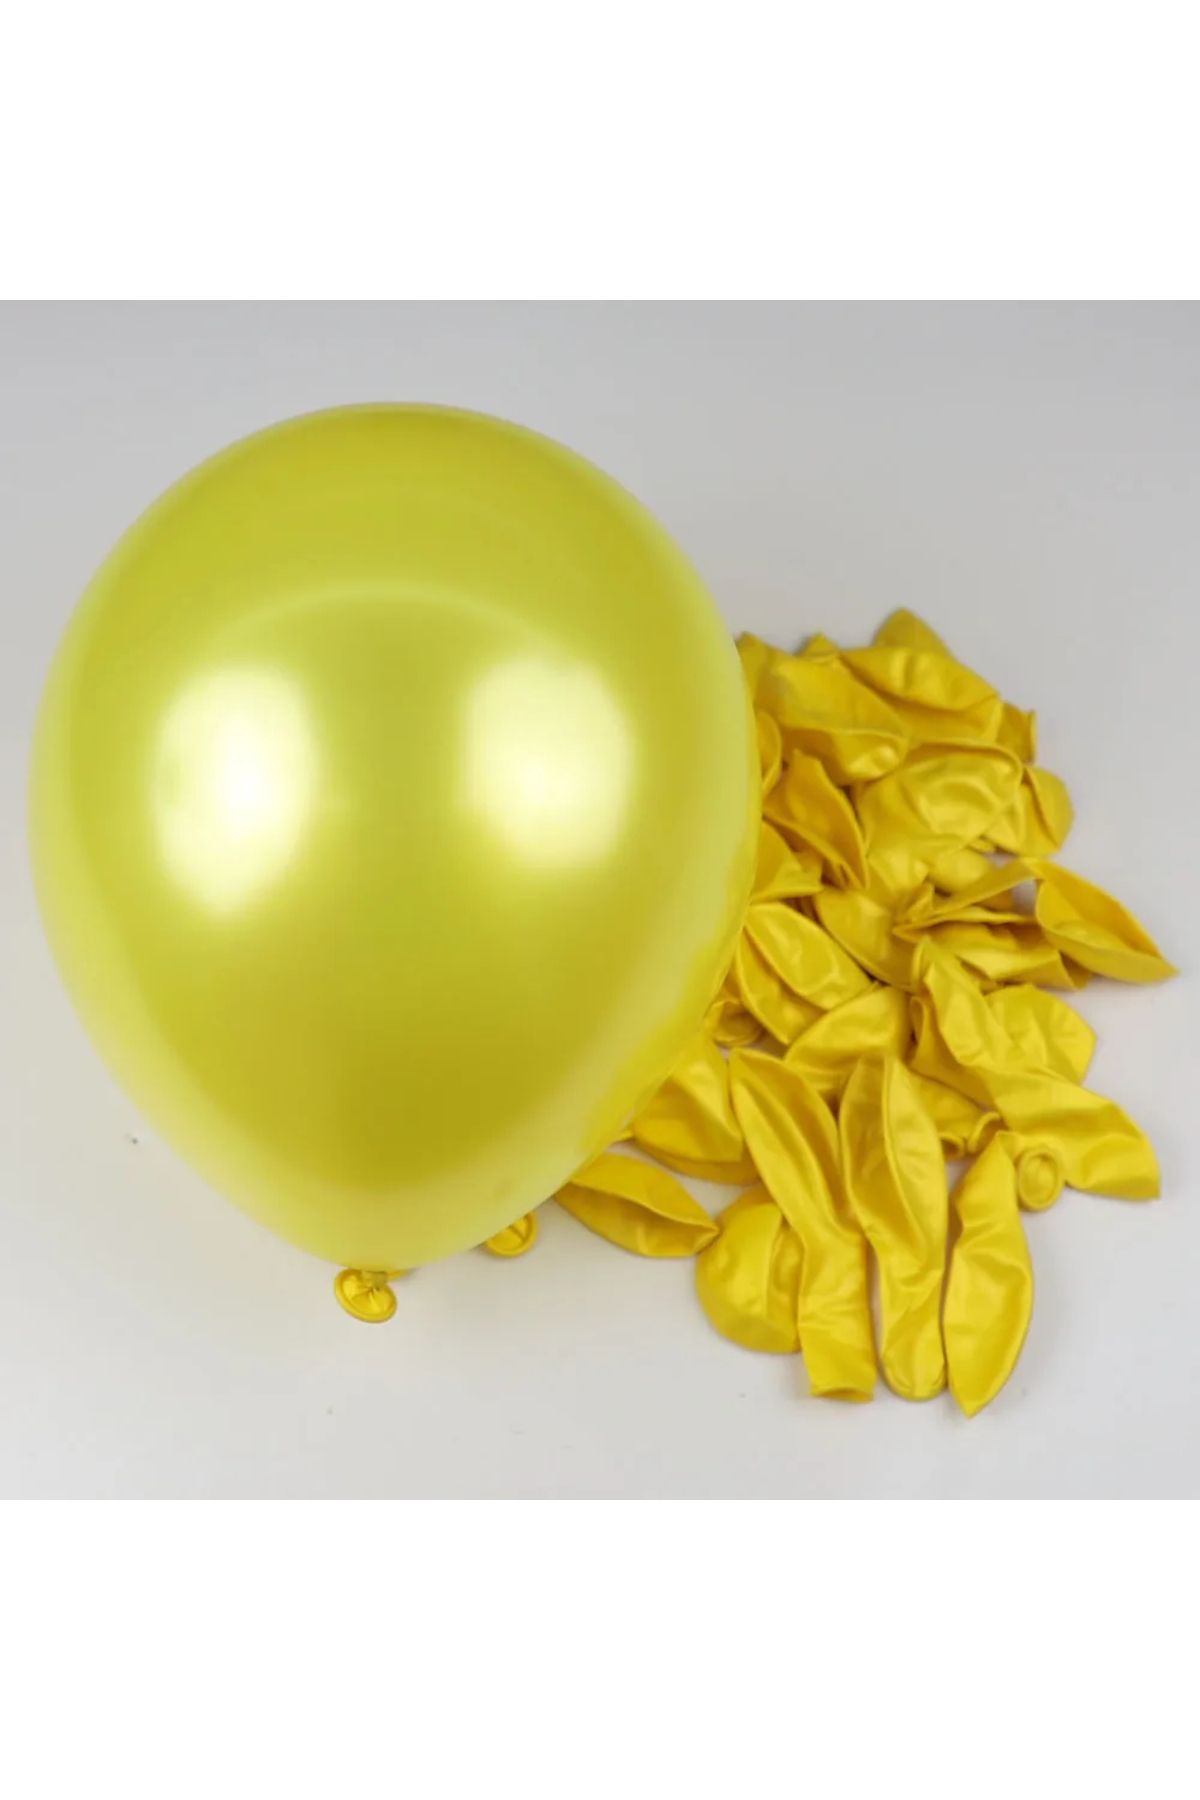 pazariz Metalik Balon Parti Organizasyon Balonu 12 İnç Düğün Doğum Günü Dekorasyon 30 Adet